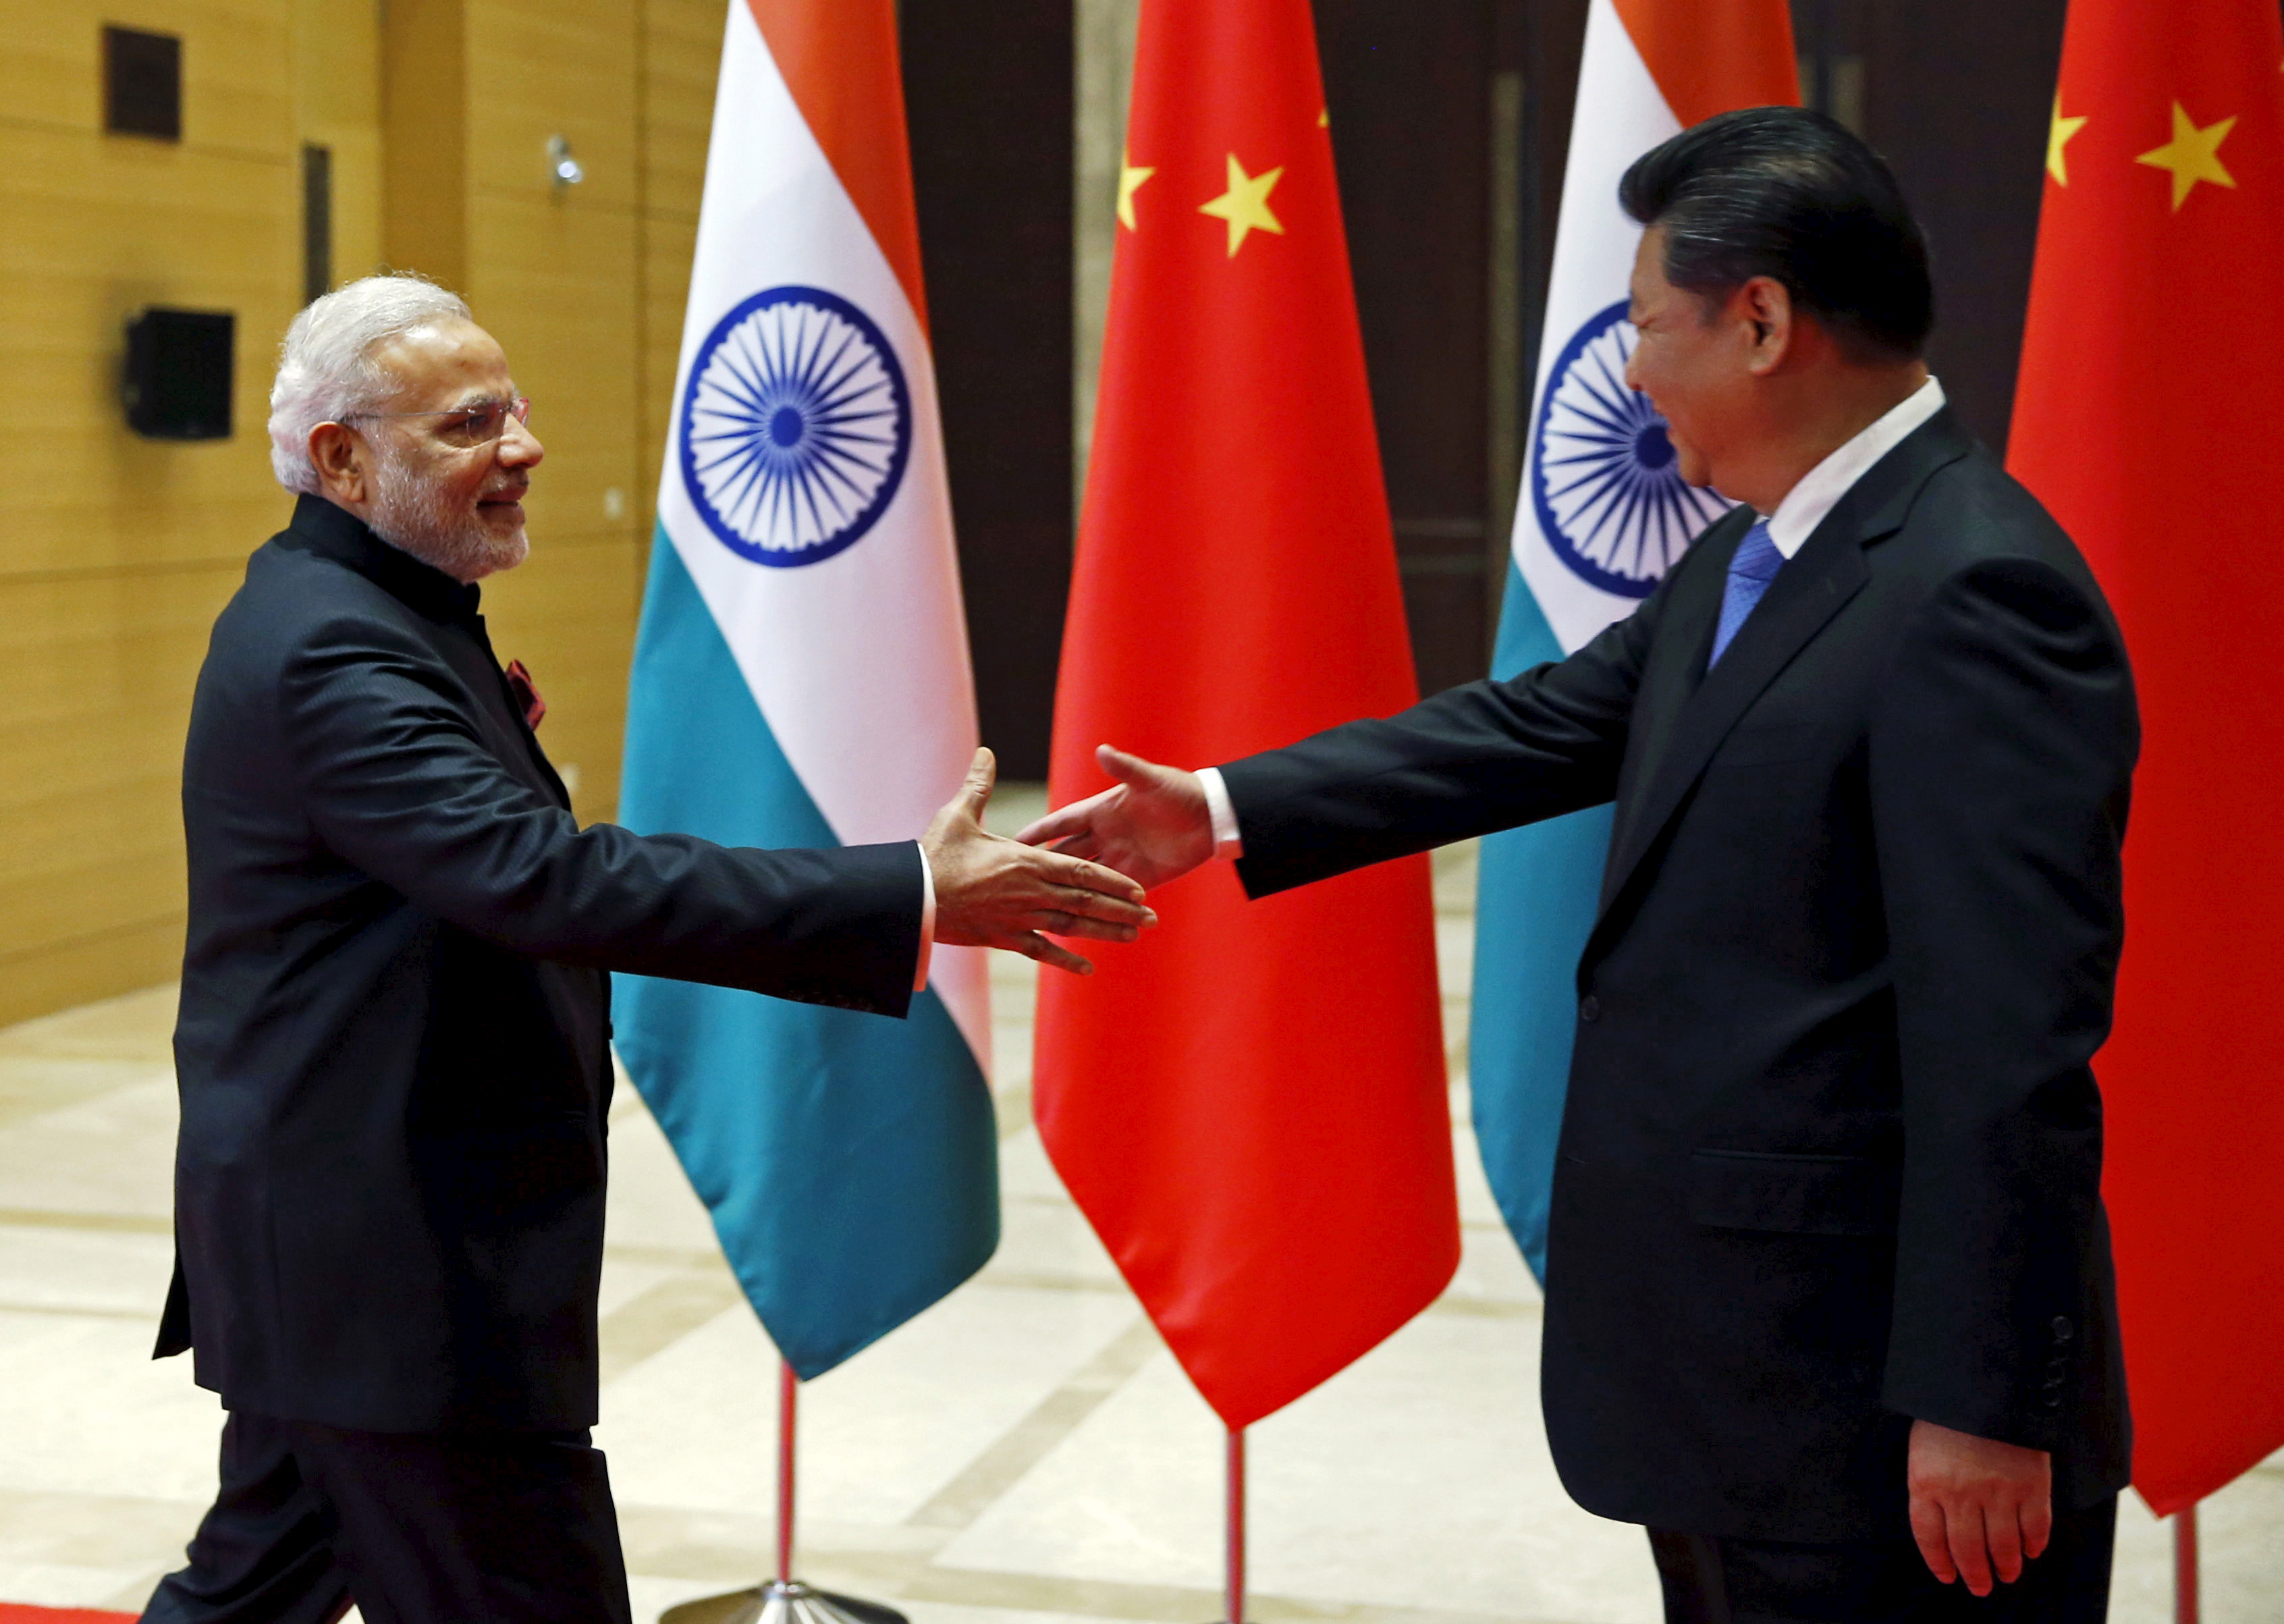 Narendra Modi, Xi Jinping to discuss economic ties and border disputes